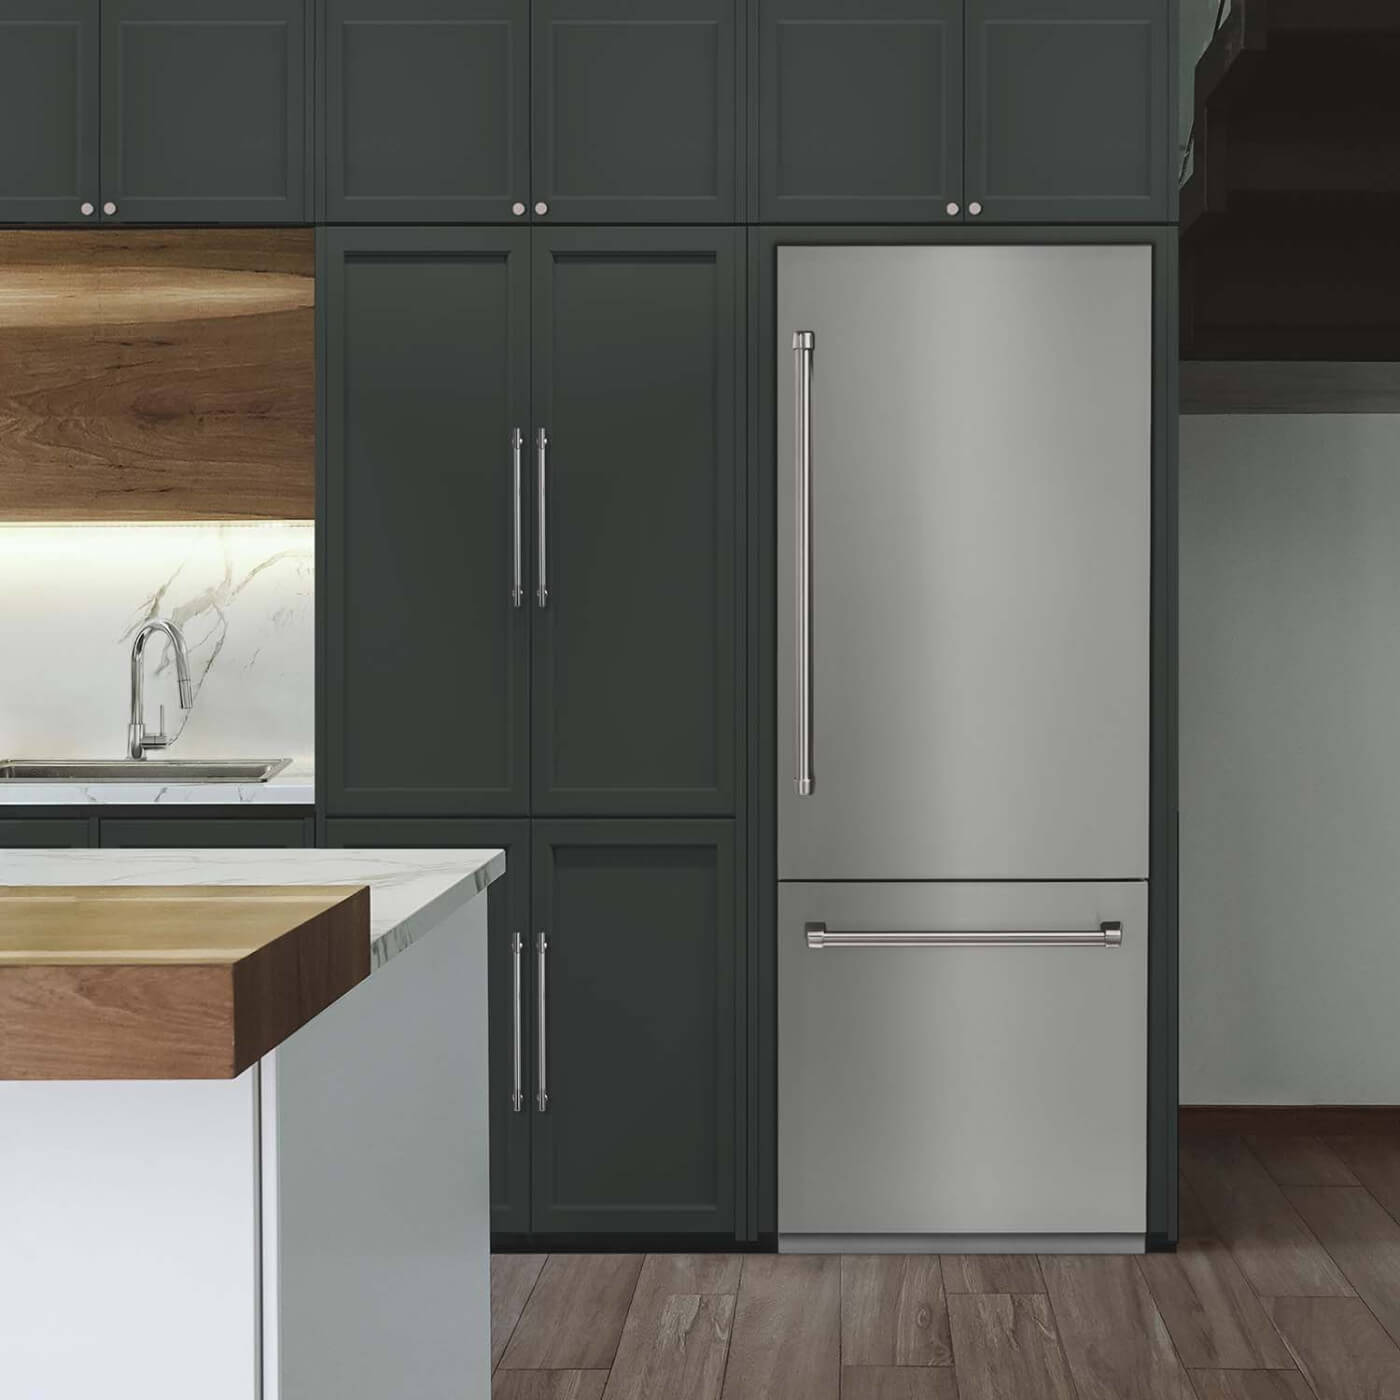 Built-in refrigerator in luxury kitchen.